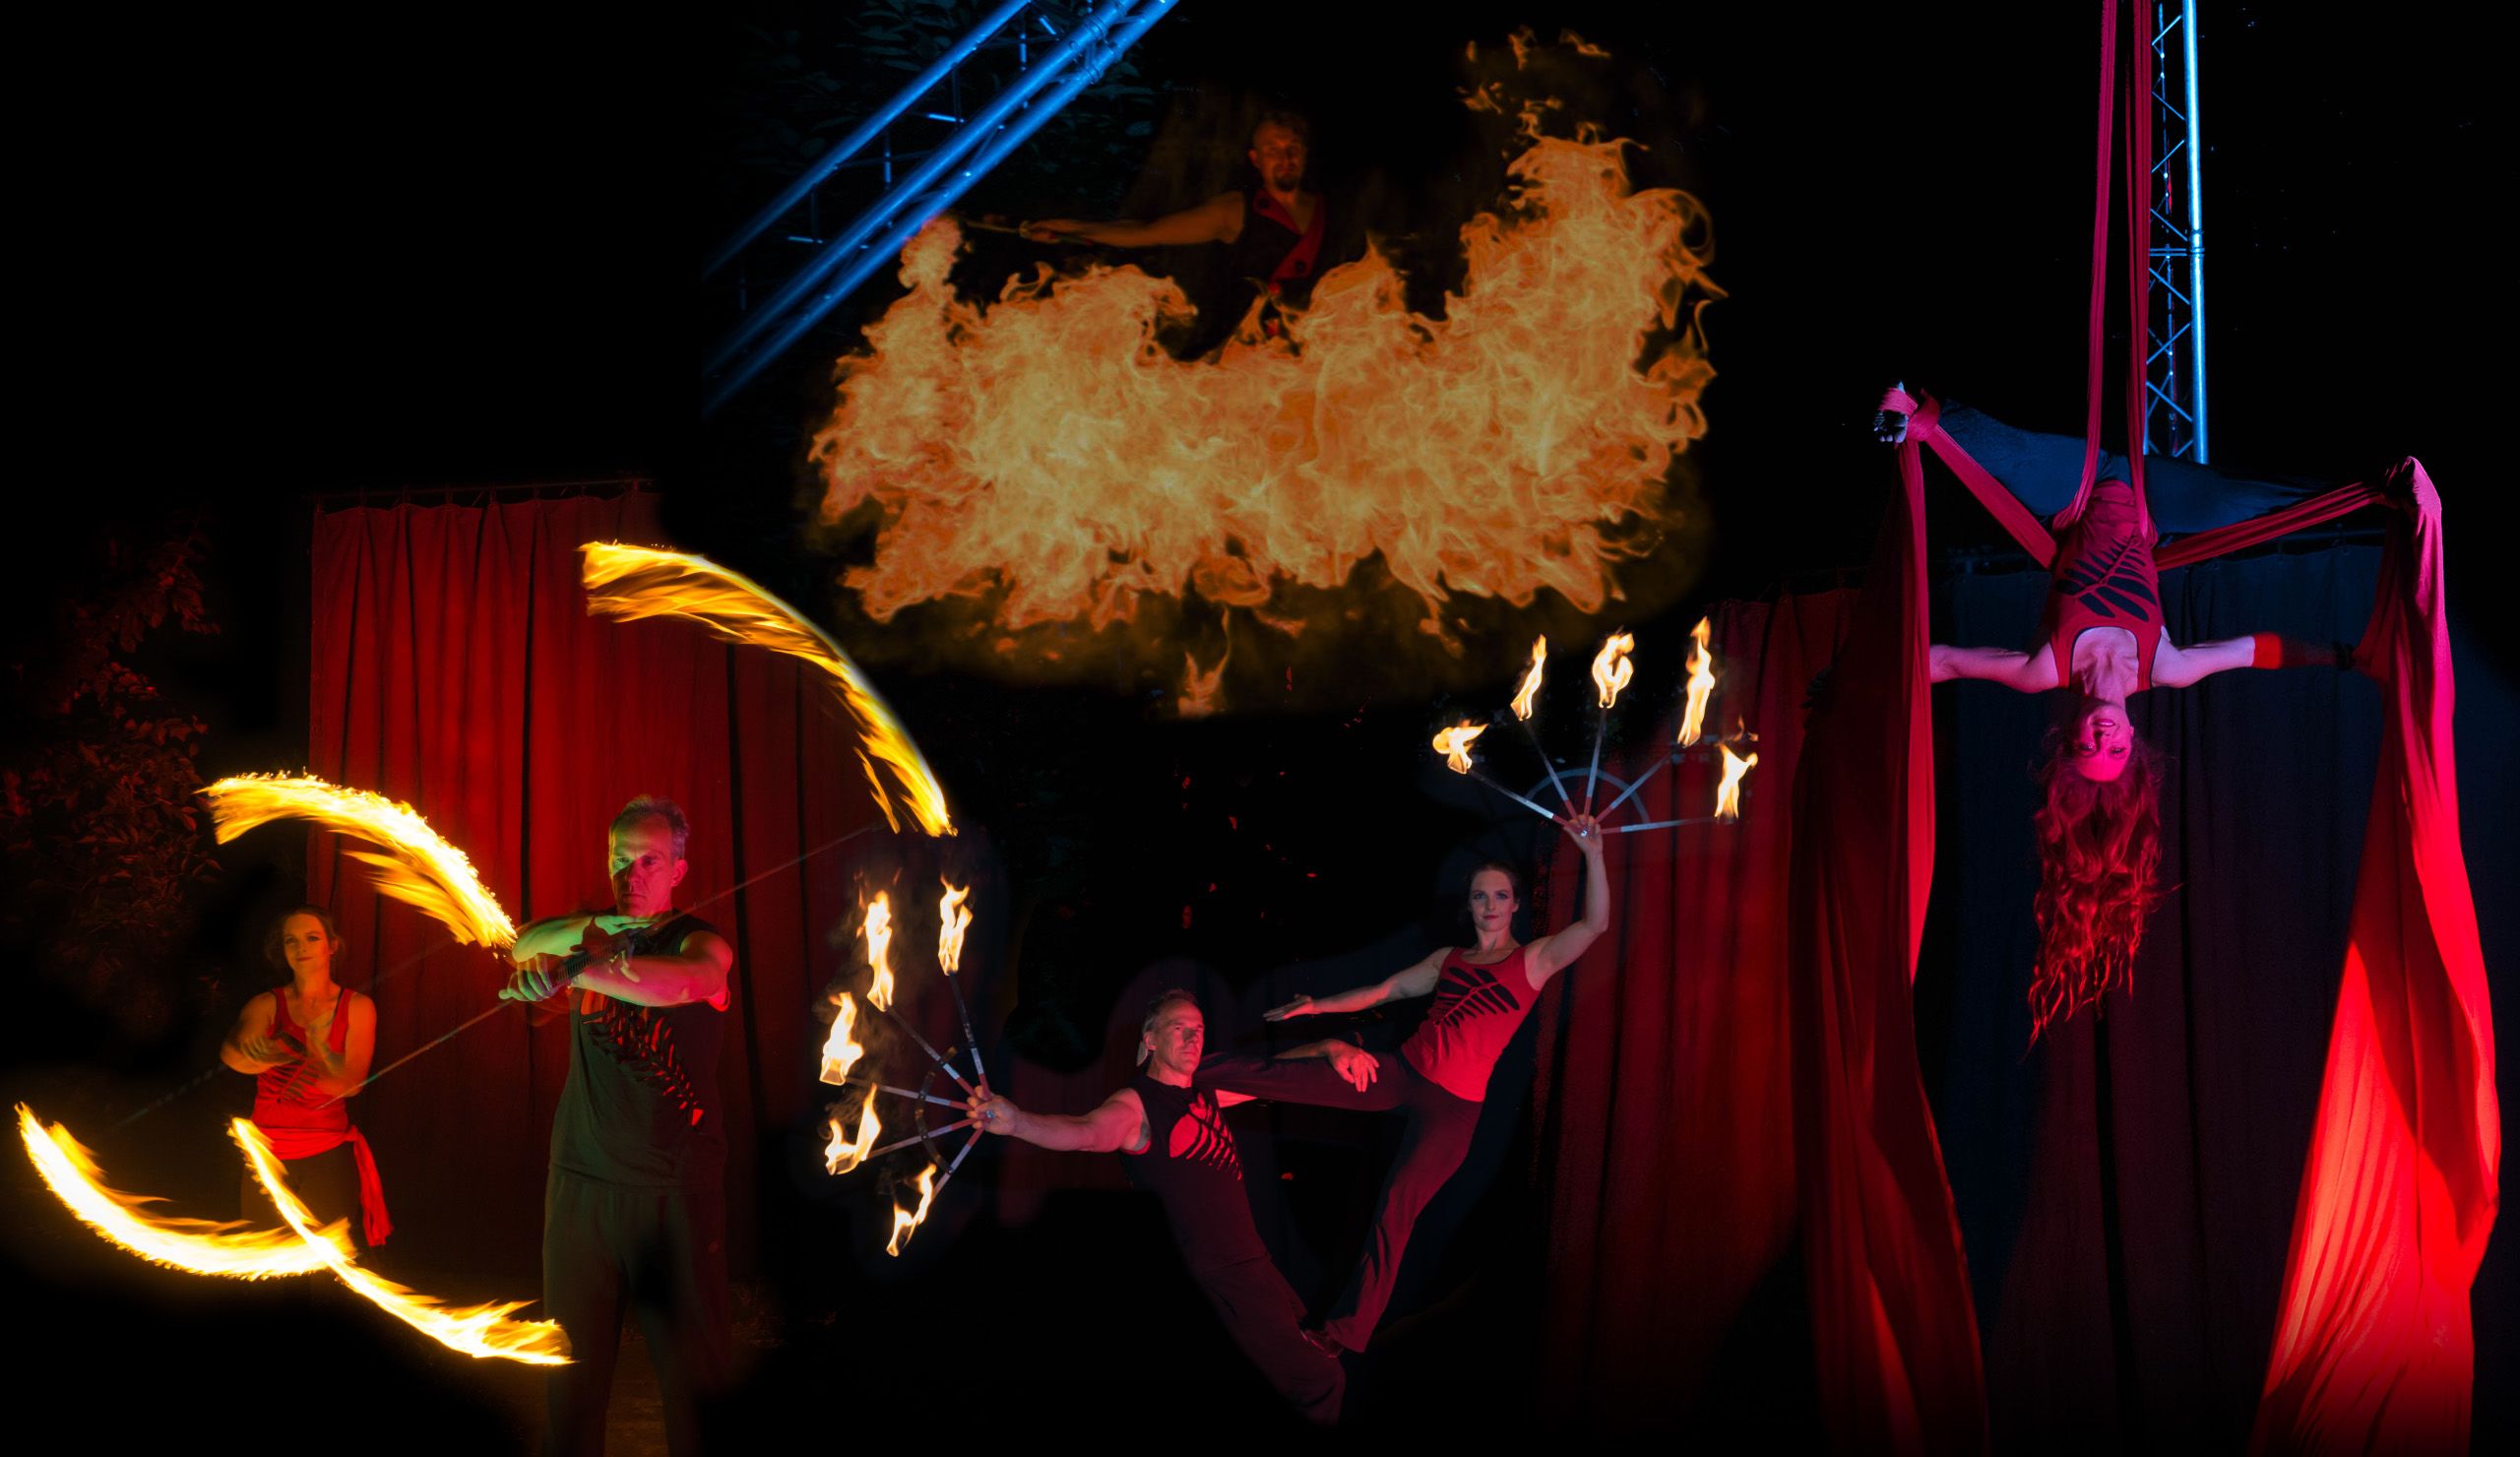 Feuershow Collage mit Stab drehen, Vertikal Tuch und Partner Akrobatik